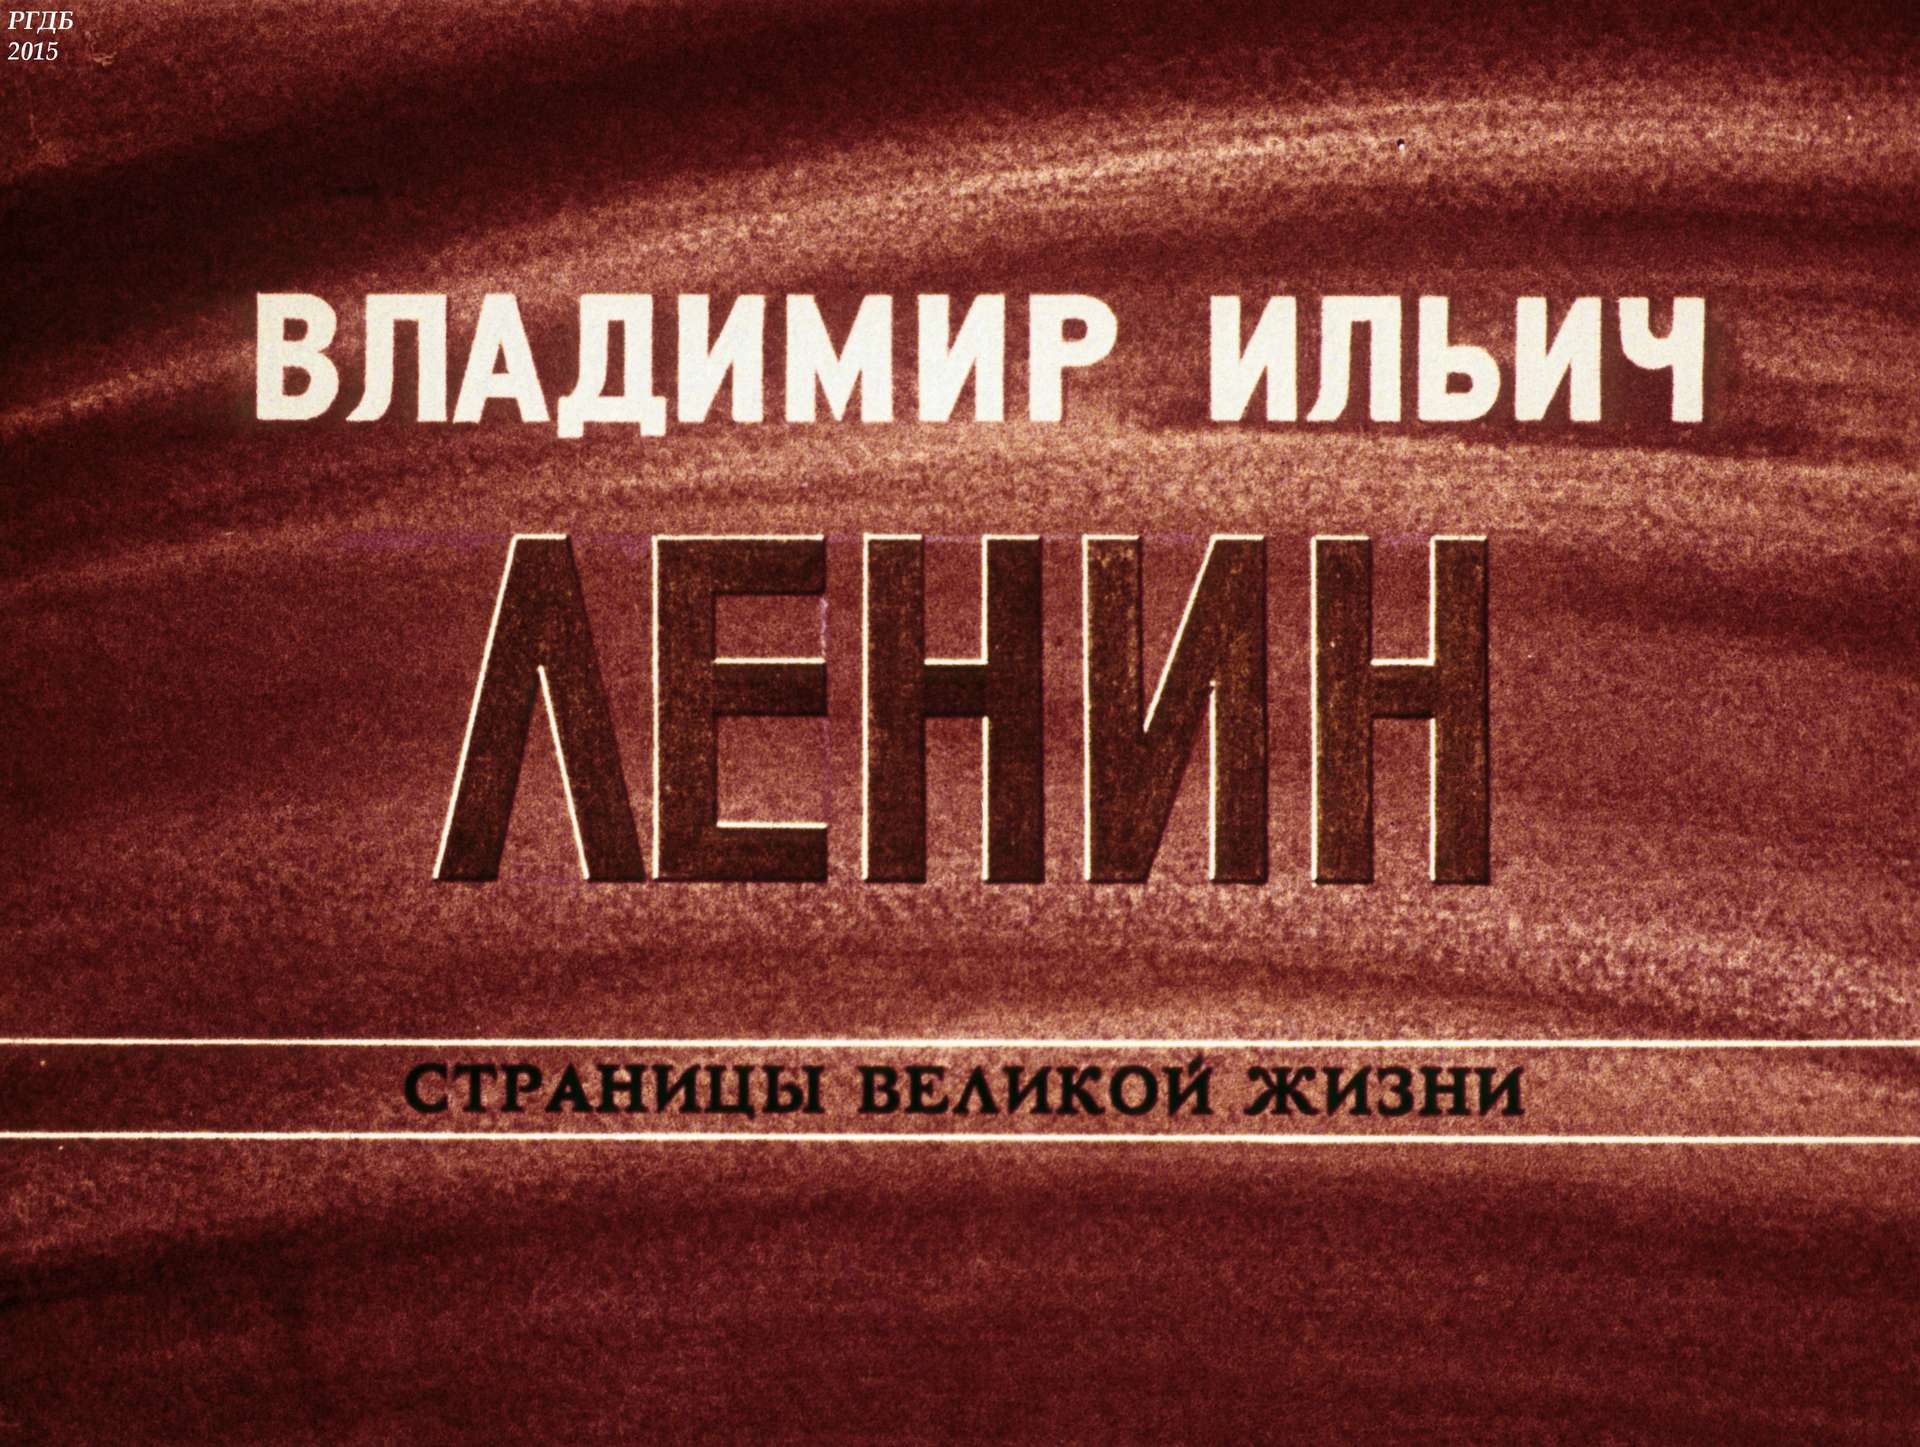 Владимир Ильич Ленин: страницы великой жизни. Ч. 2: Вождь революционного пролетариата России (1893-1897)